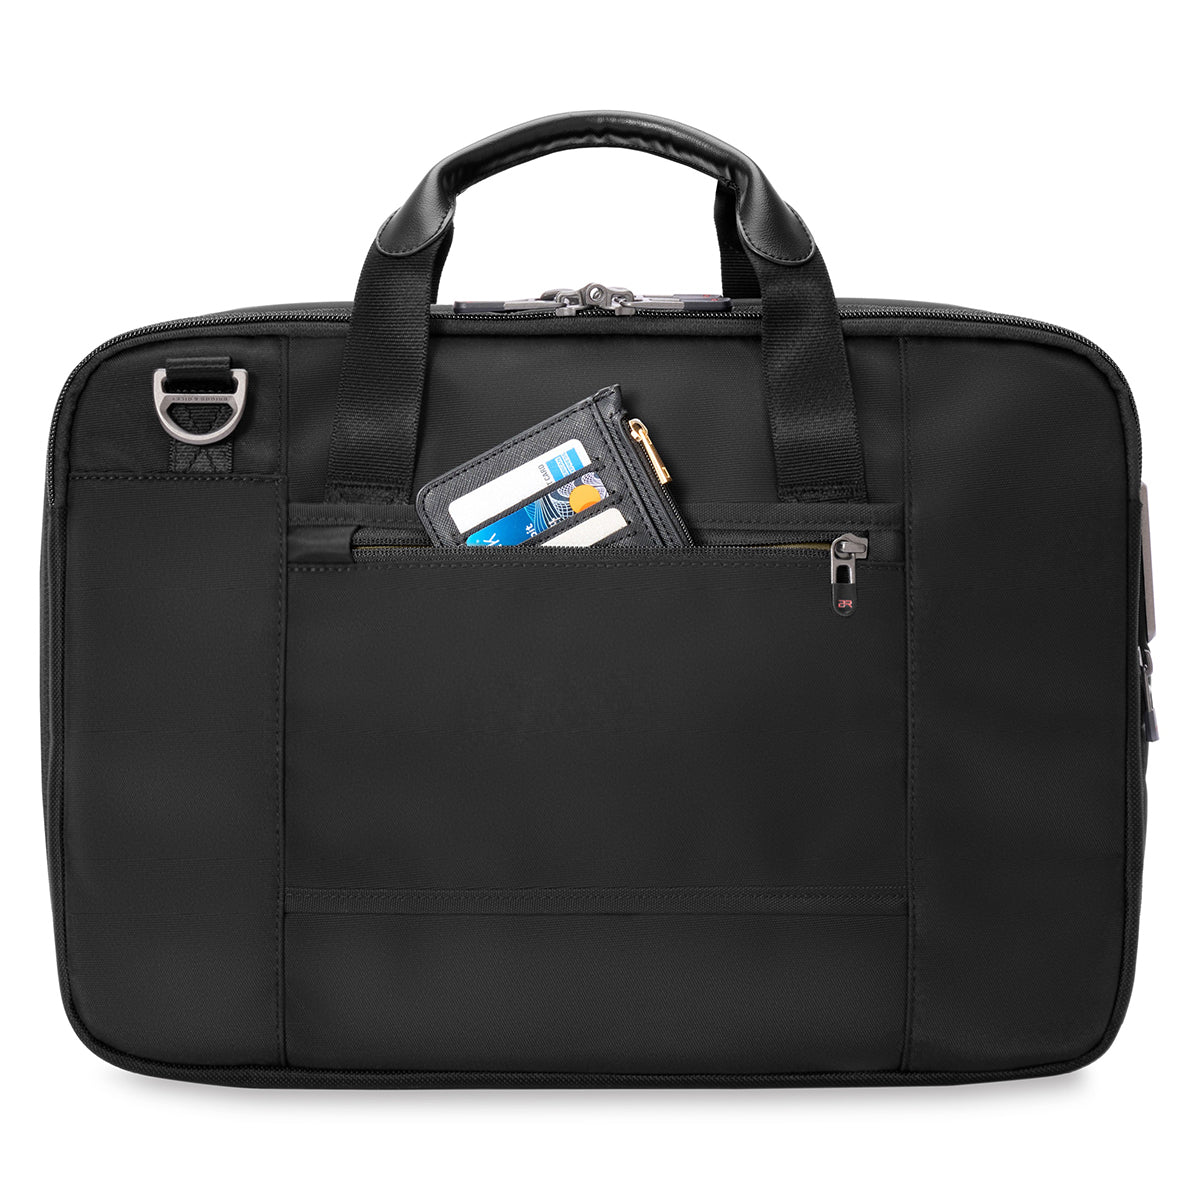 Briggs & Riley HTA Medium Expandable Briefcase